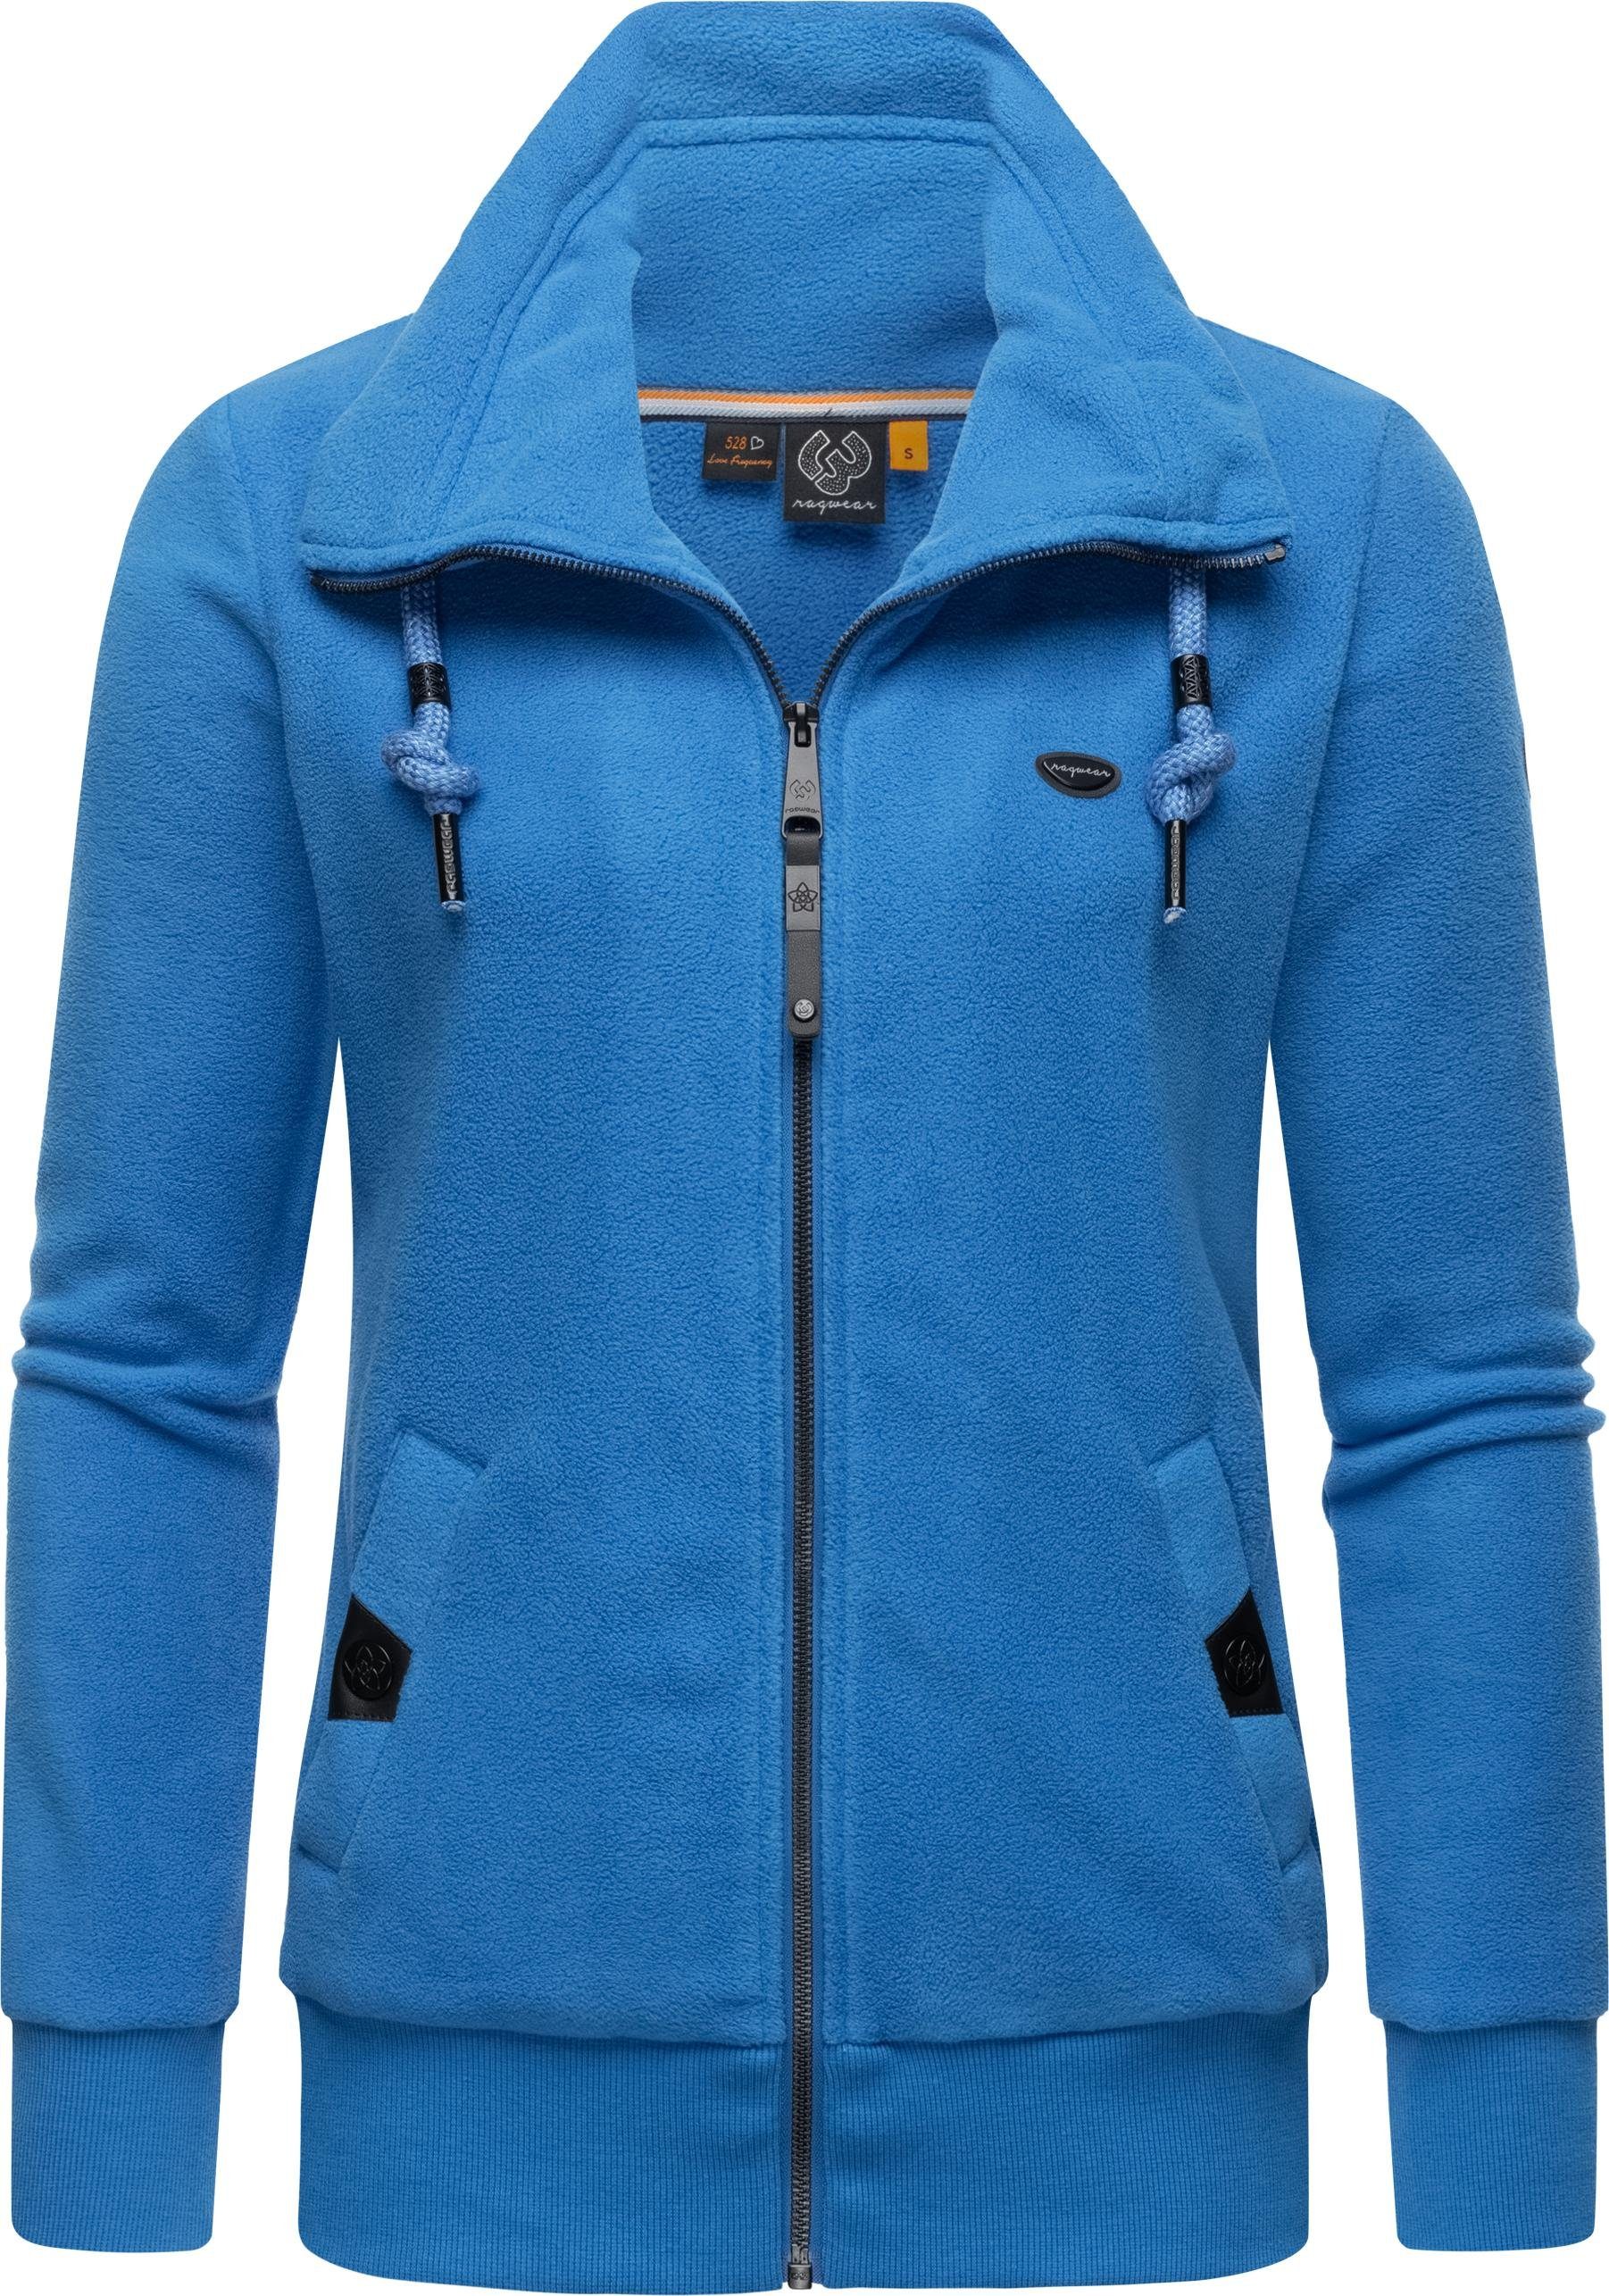 Ragwear Sweatjacke Rylie Fleece Zip Solid weicher Fleece Zip-Sweater mit Kordeln blau